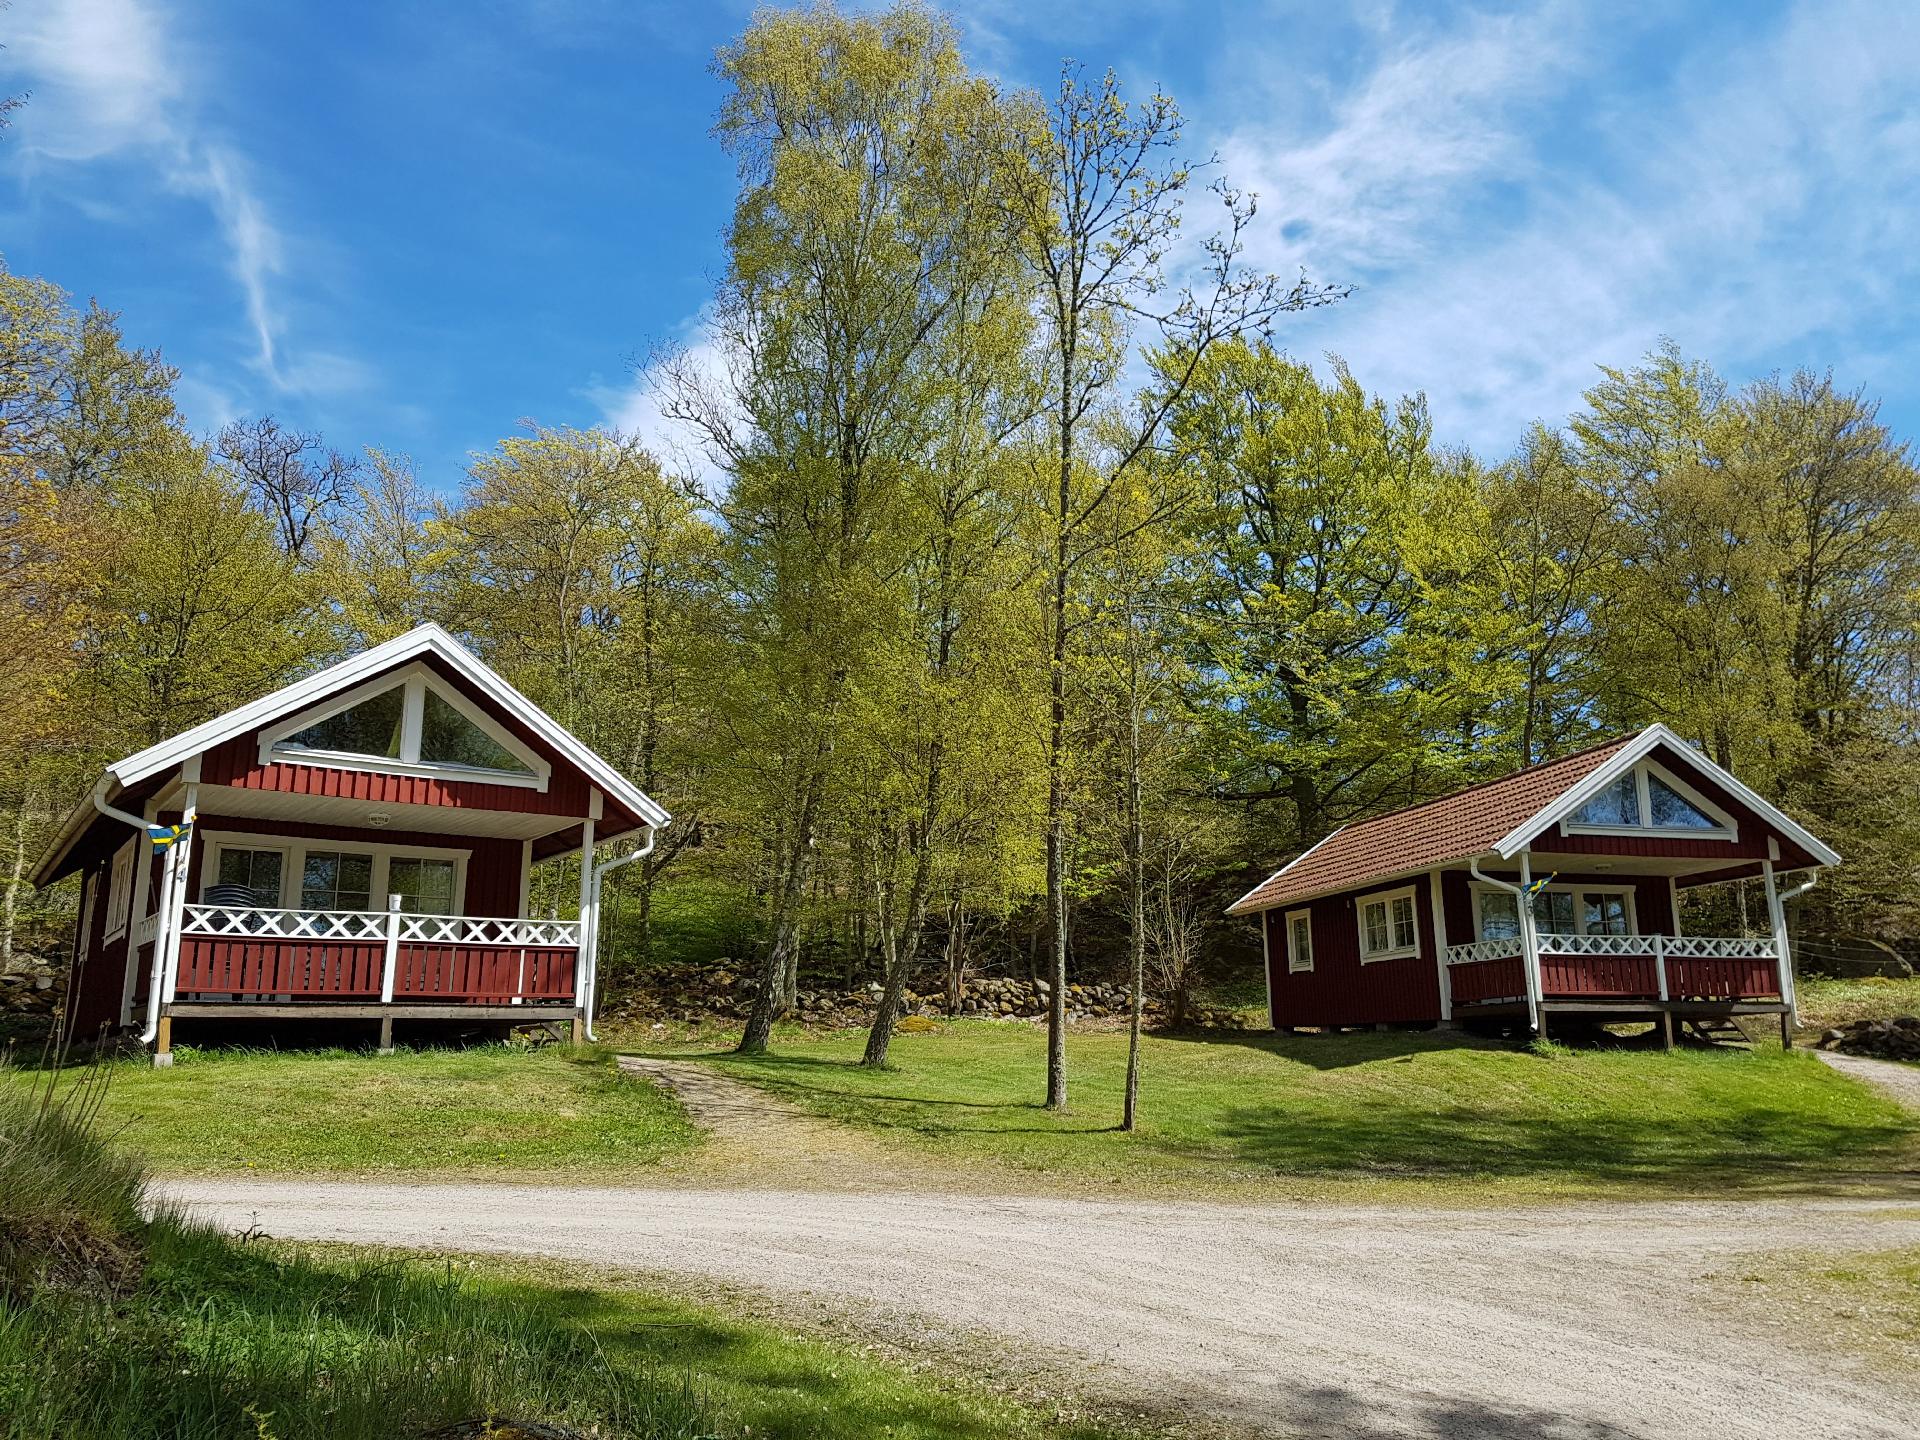 Holzhaus mit überdachter Terrasse Ferienhaus in Schweden